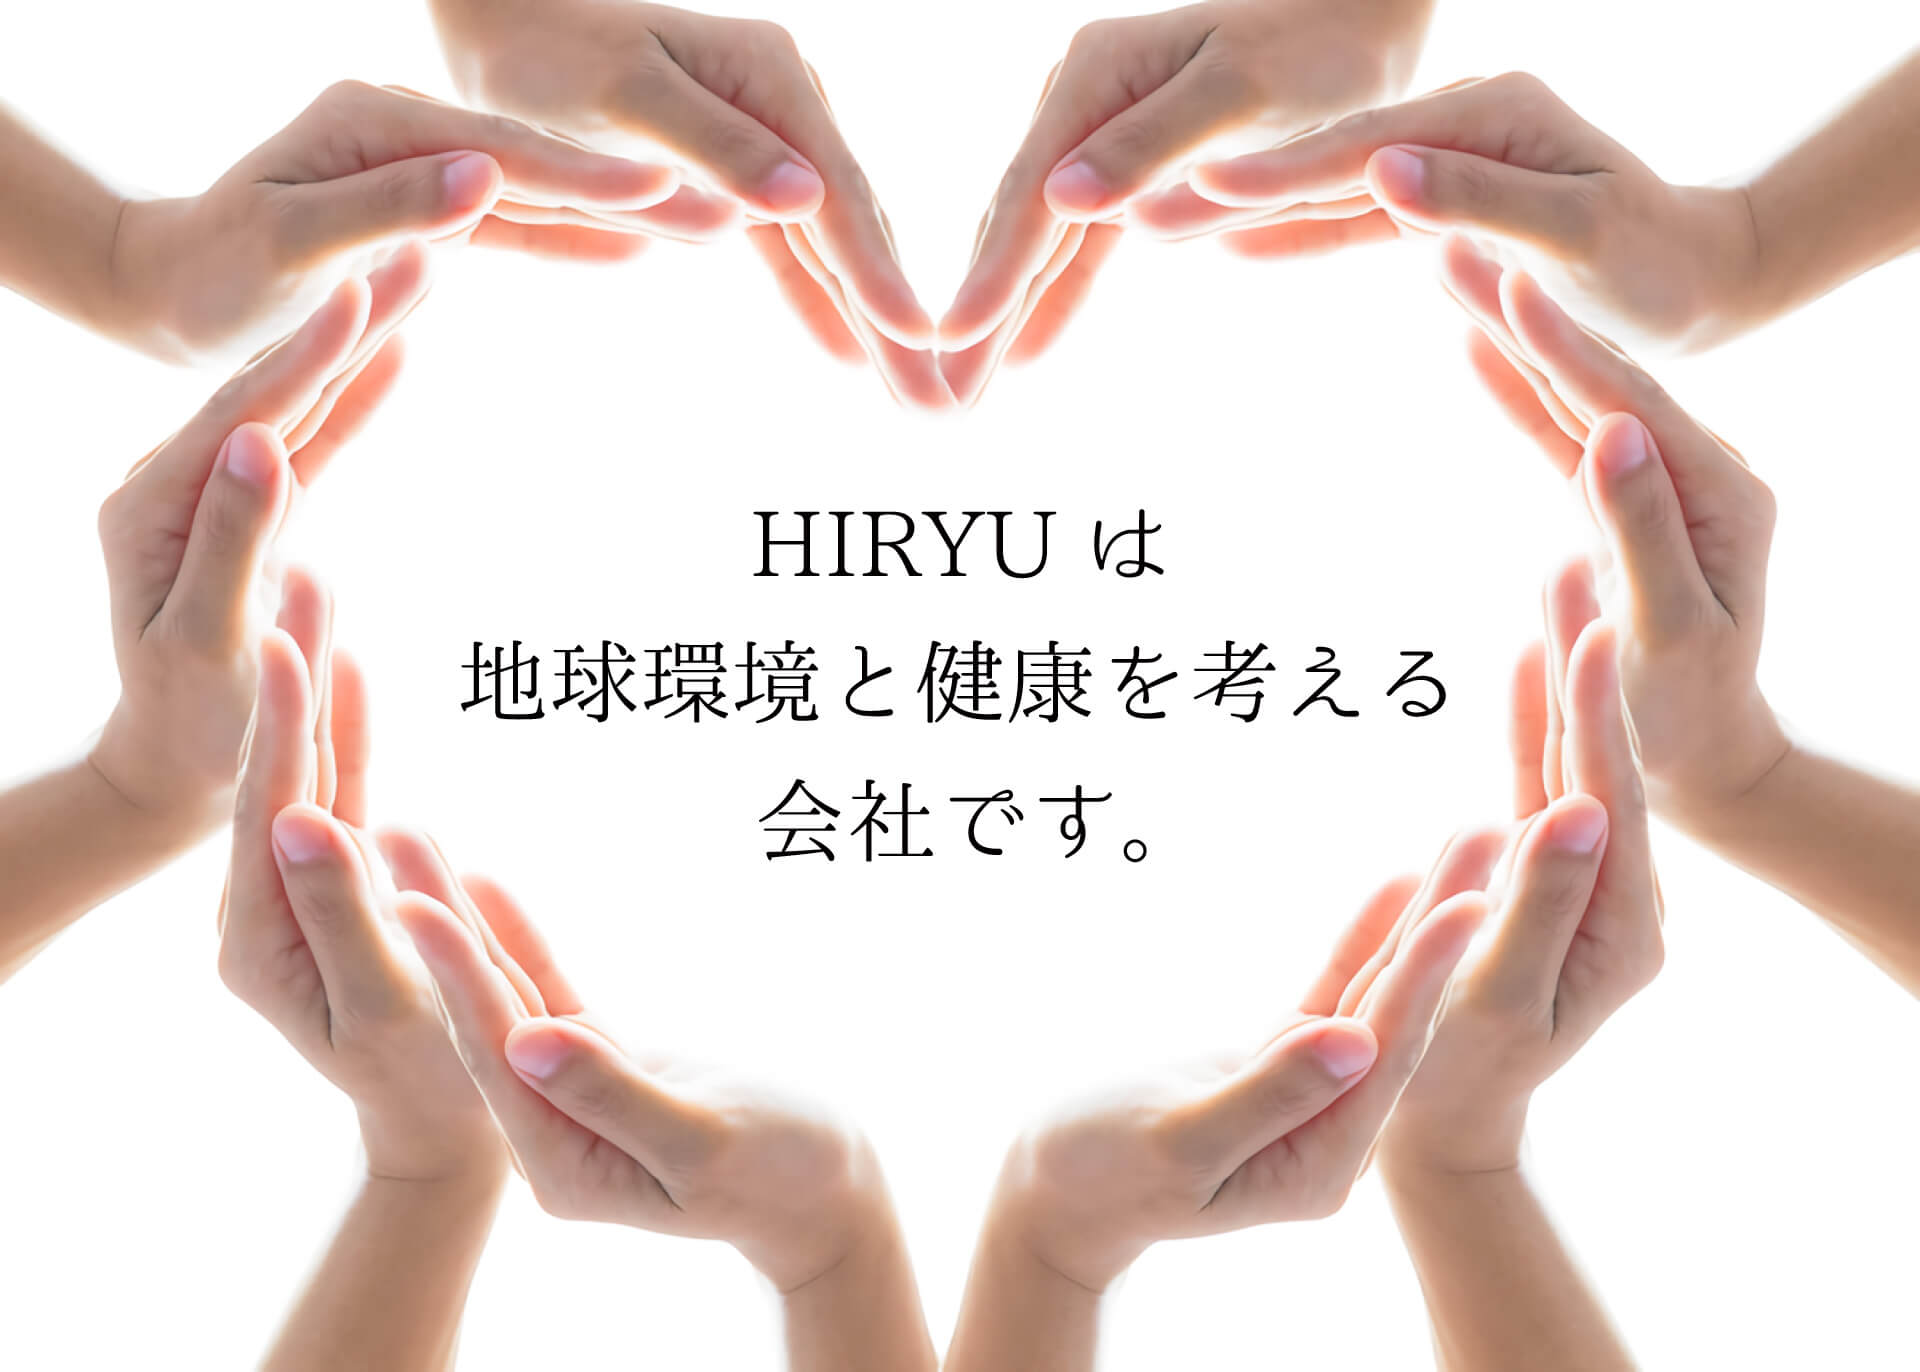 地球環境と健康を考える会社 HIRYU